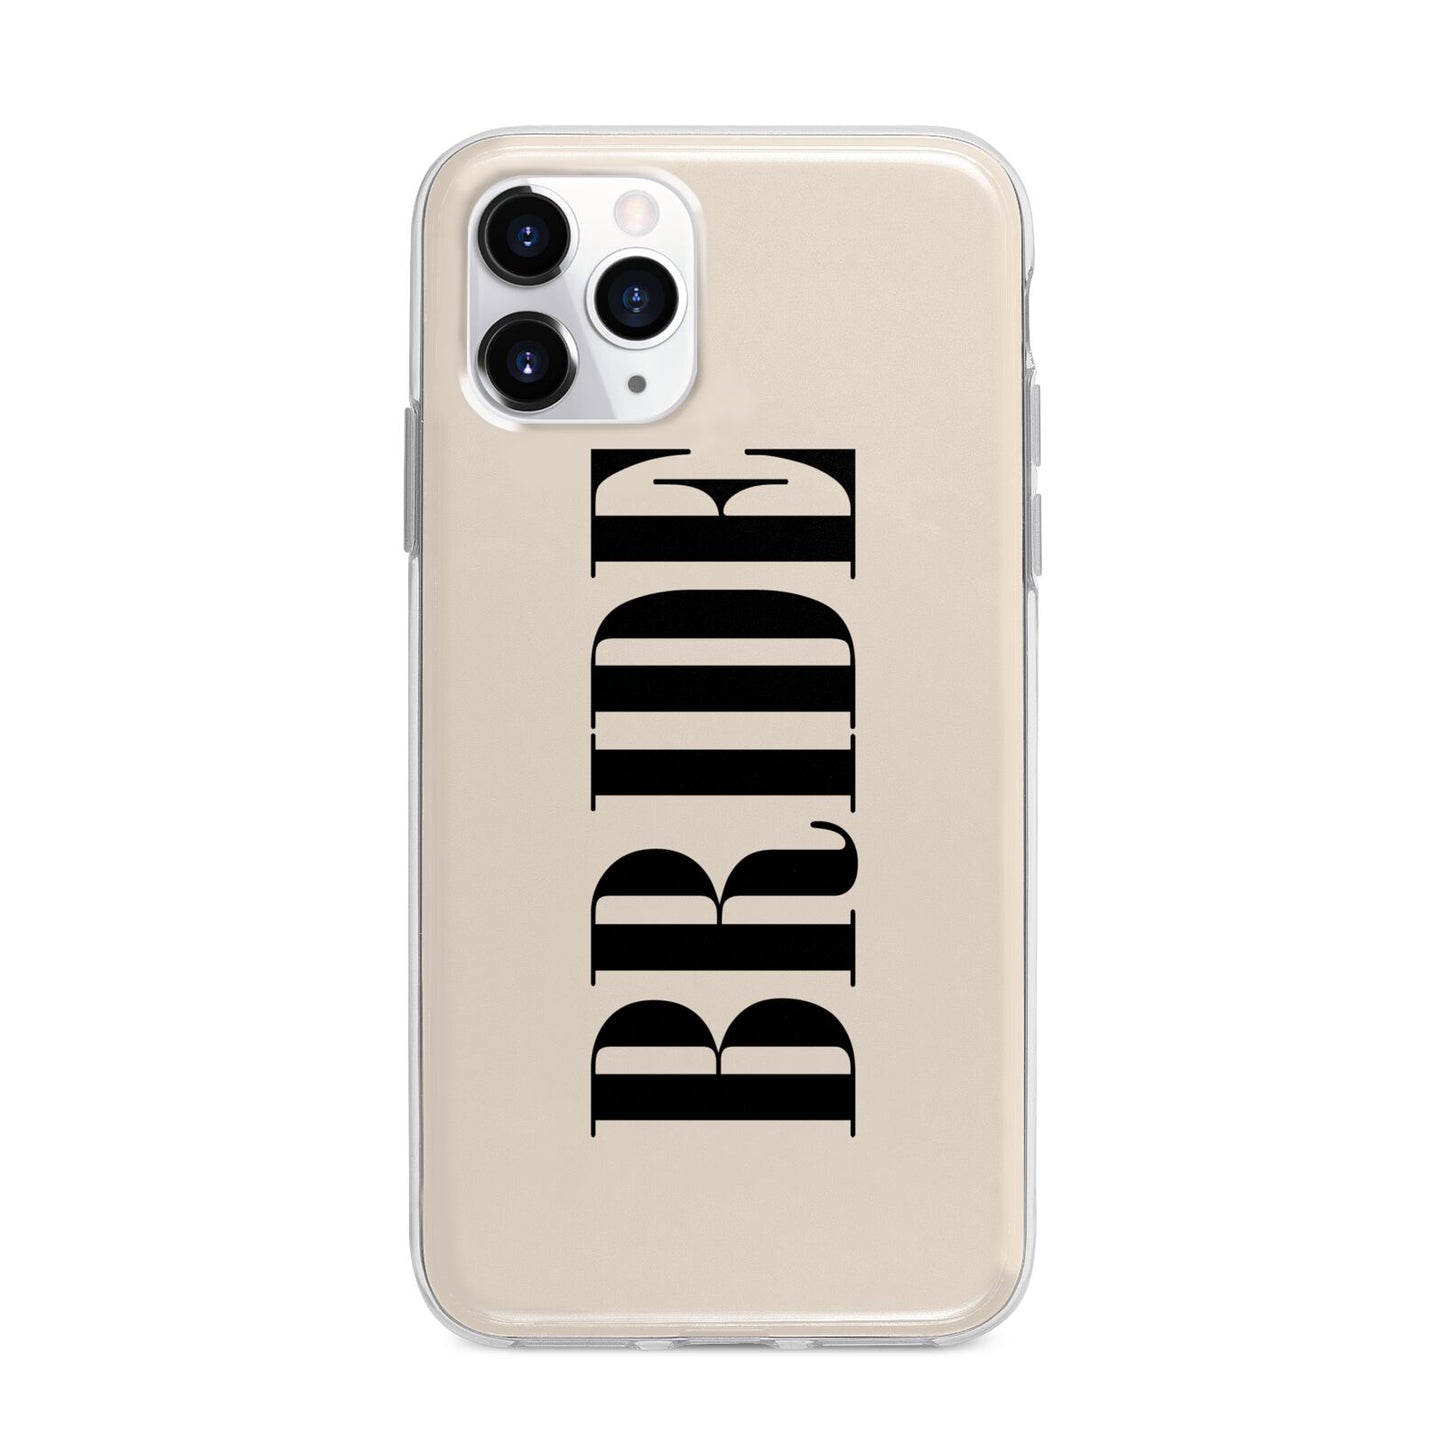 Future Bride Apple iPhone 11 Pro Max in Silver with Bumper Case